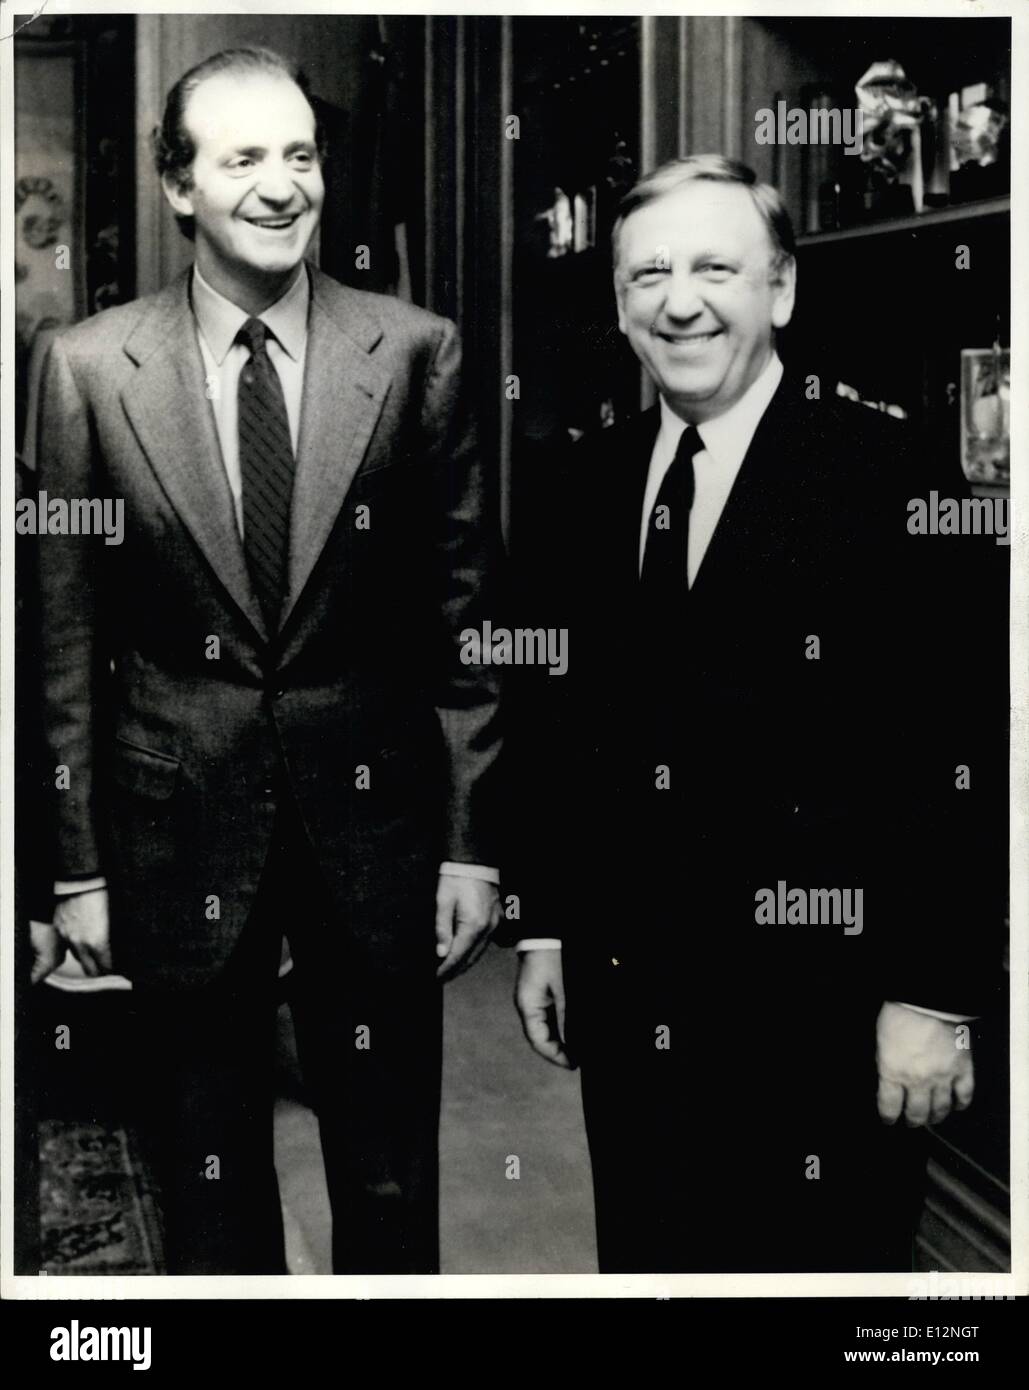 Febbraio 24, 2012 - Sua Maestà il Re Don Juan Carlos I, re di Spagna (sinistra) e il dottor John Brademas, presidente della New York University (destra) Foto Stock